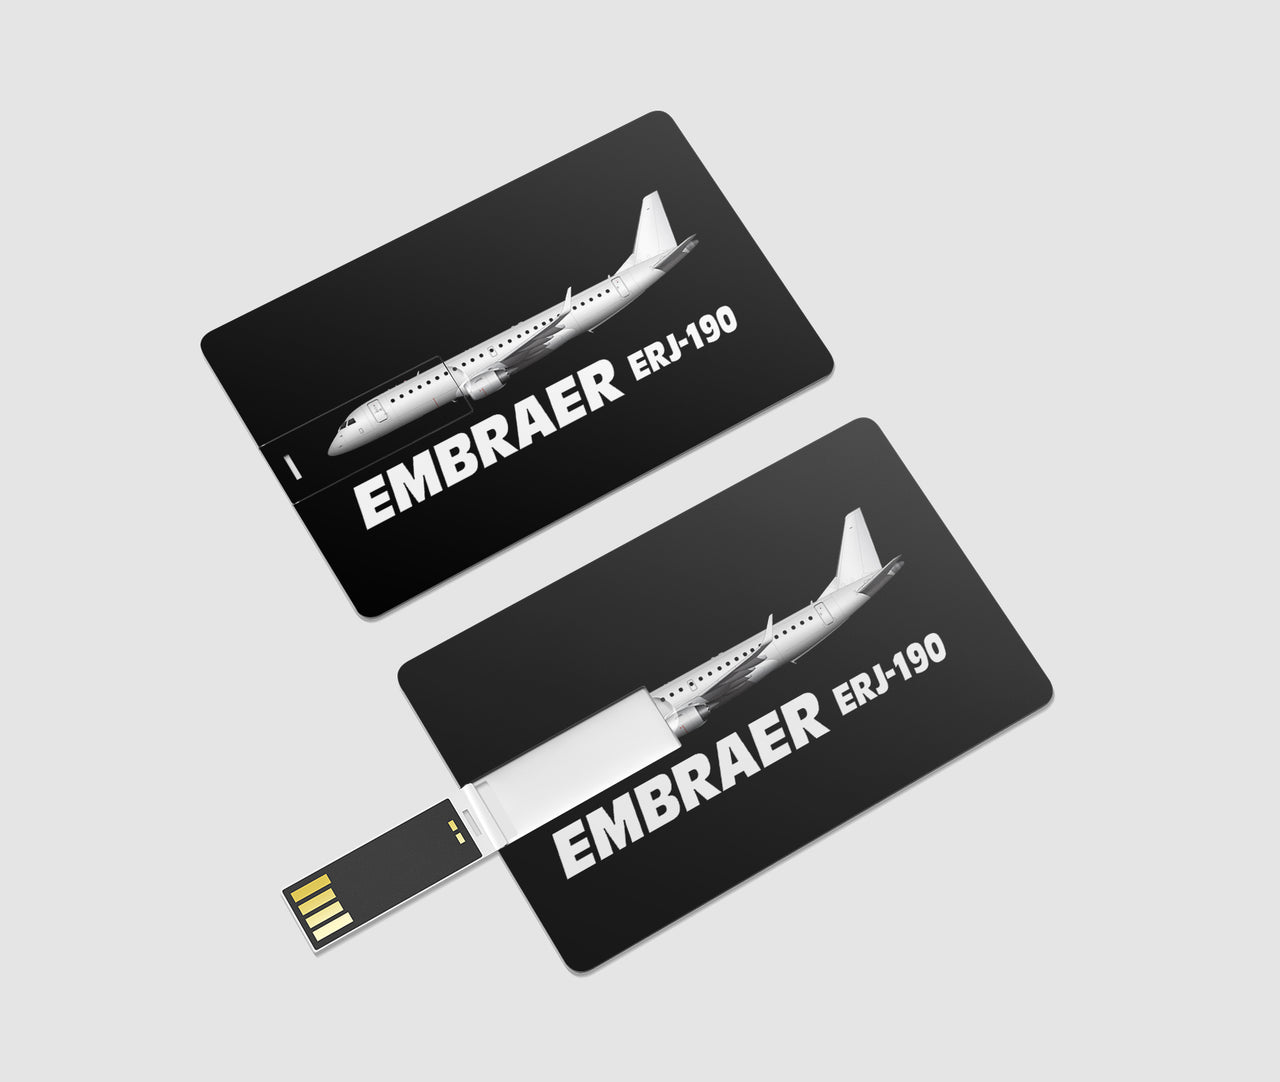 The Embraer ERJ-190 Designed USB Cards